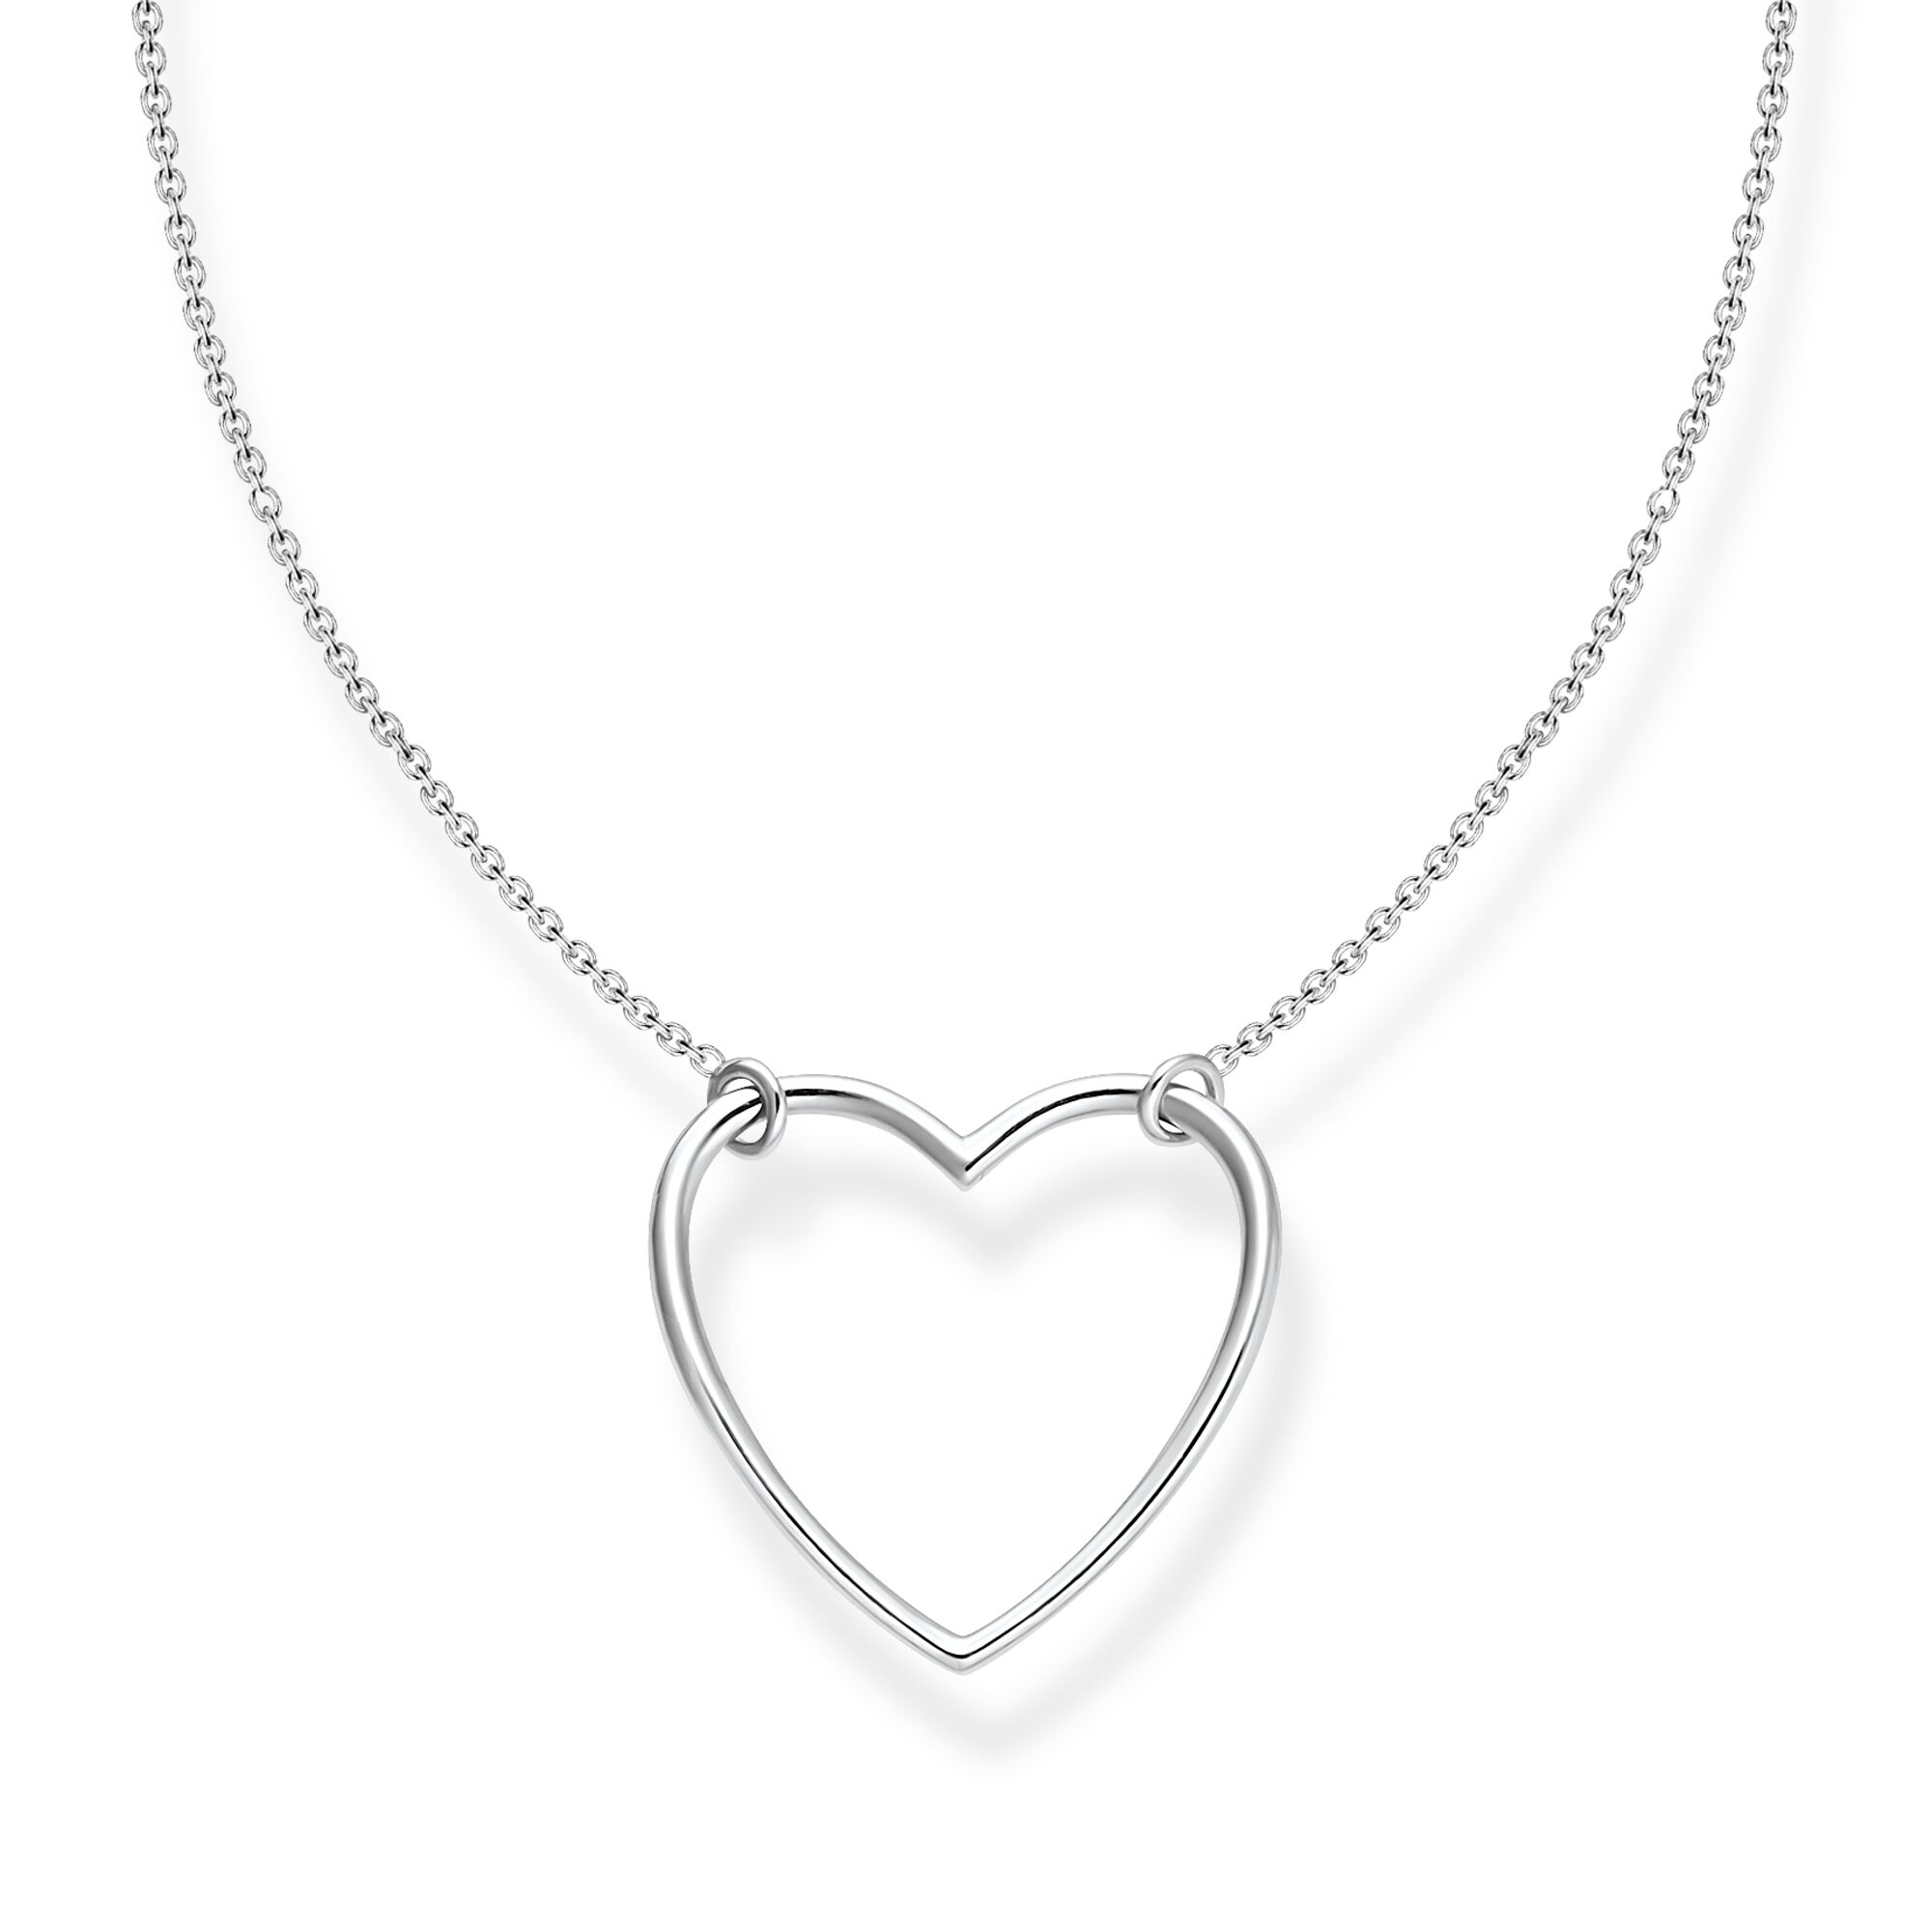 Thomas Sabo Necklace Heart Silver Necklace Thomas Sabo 